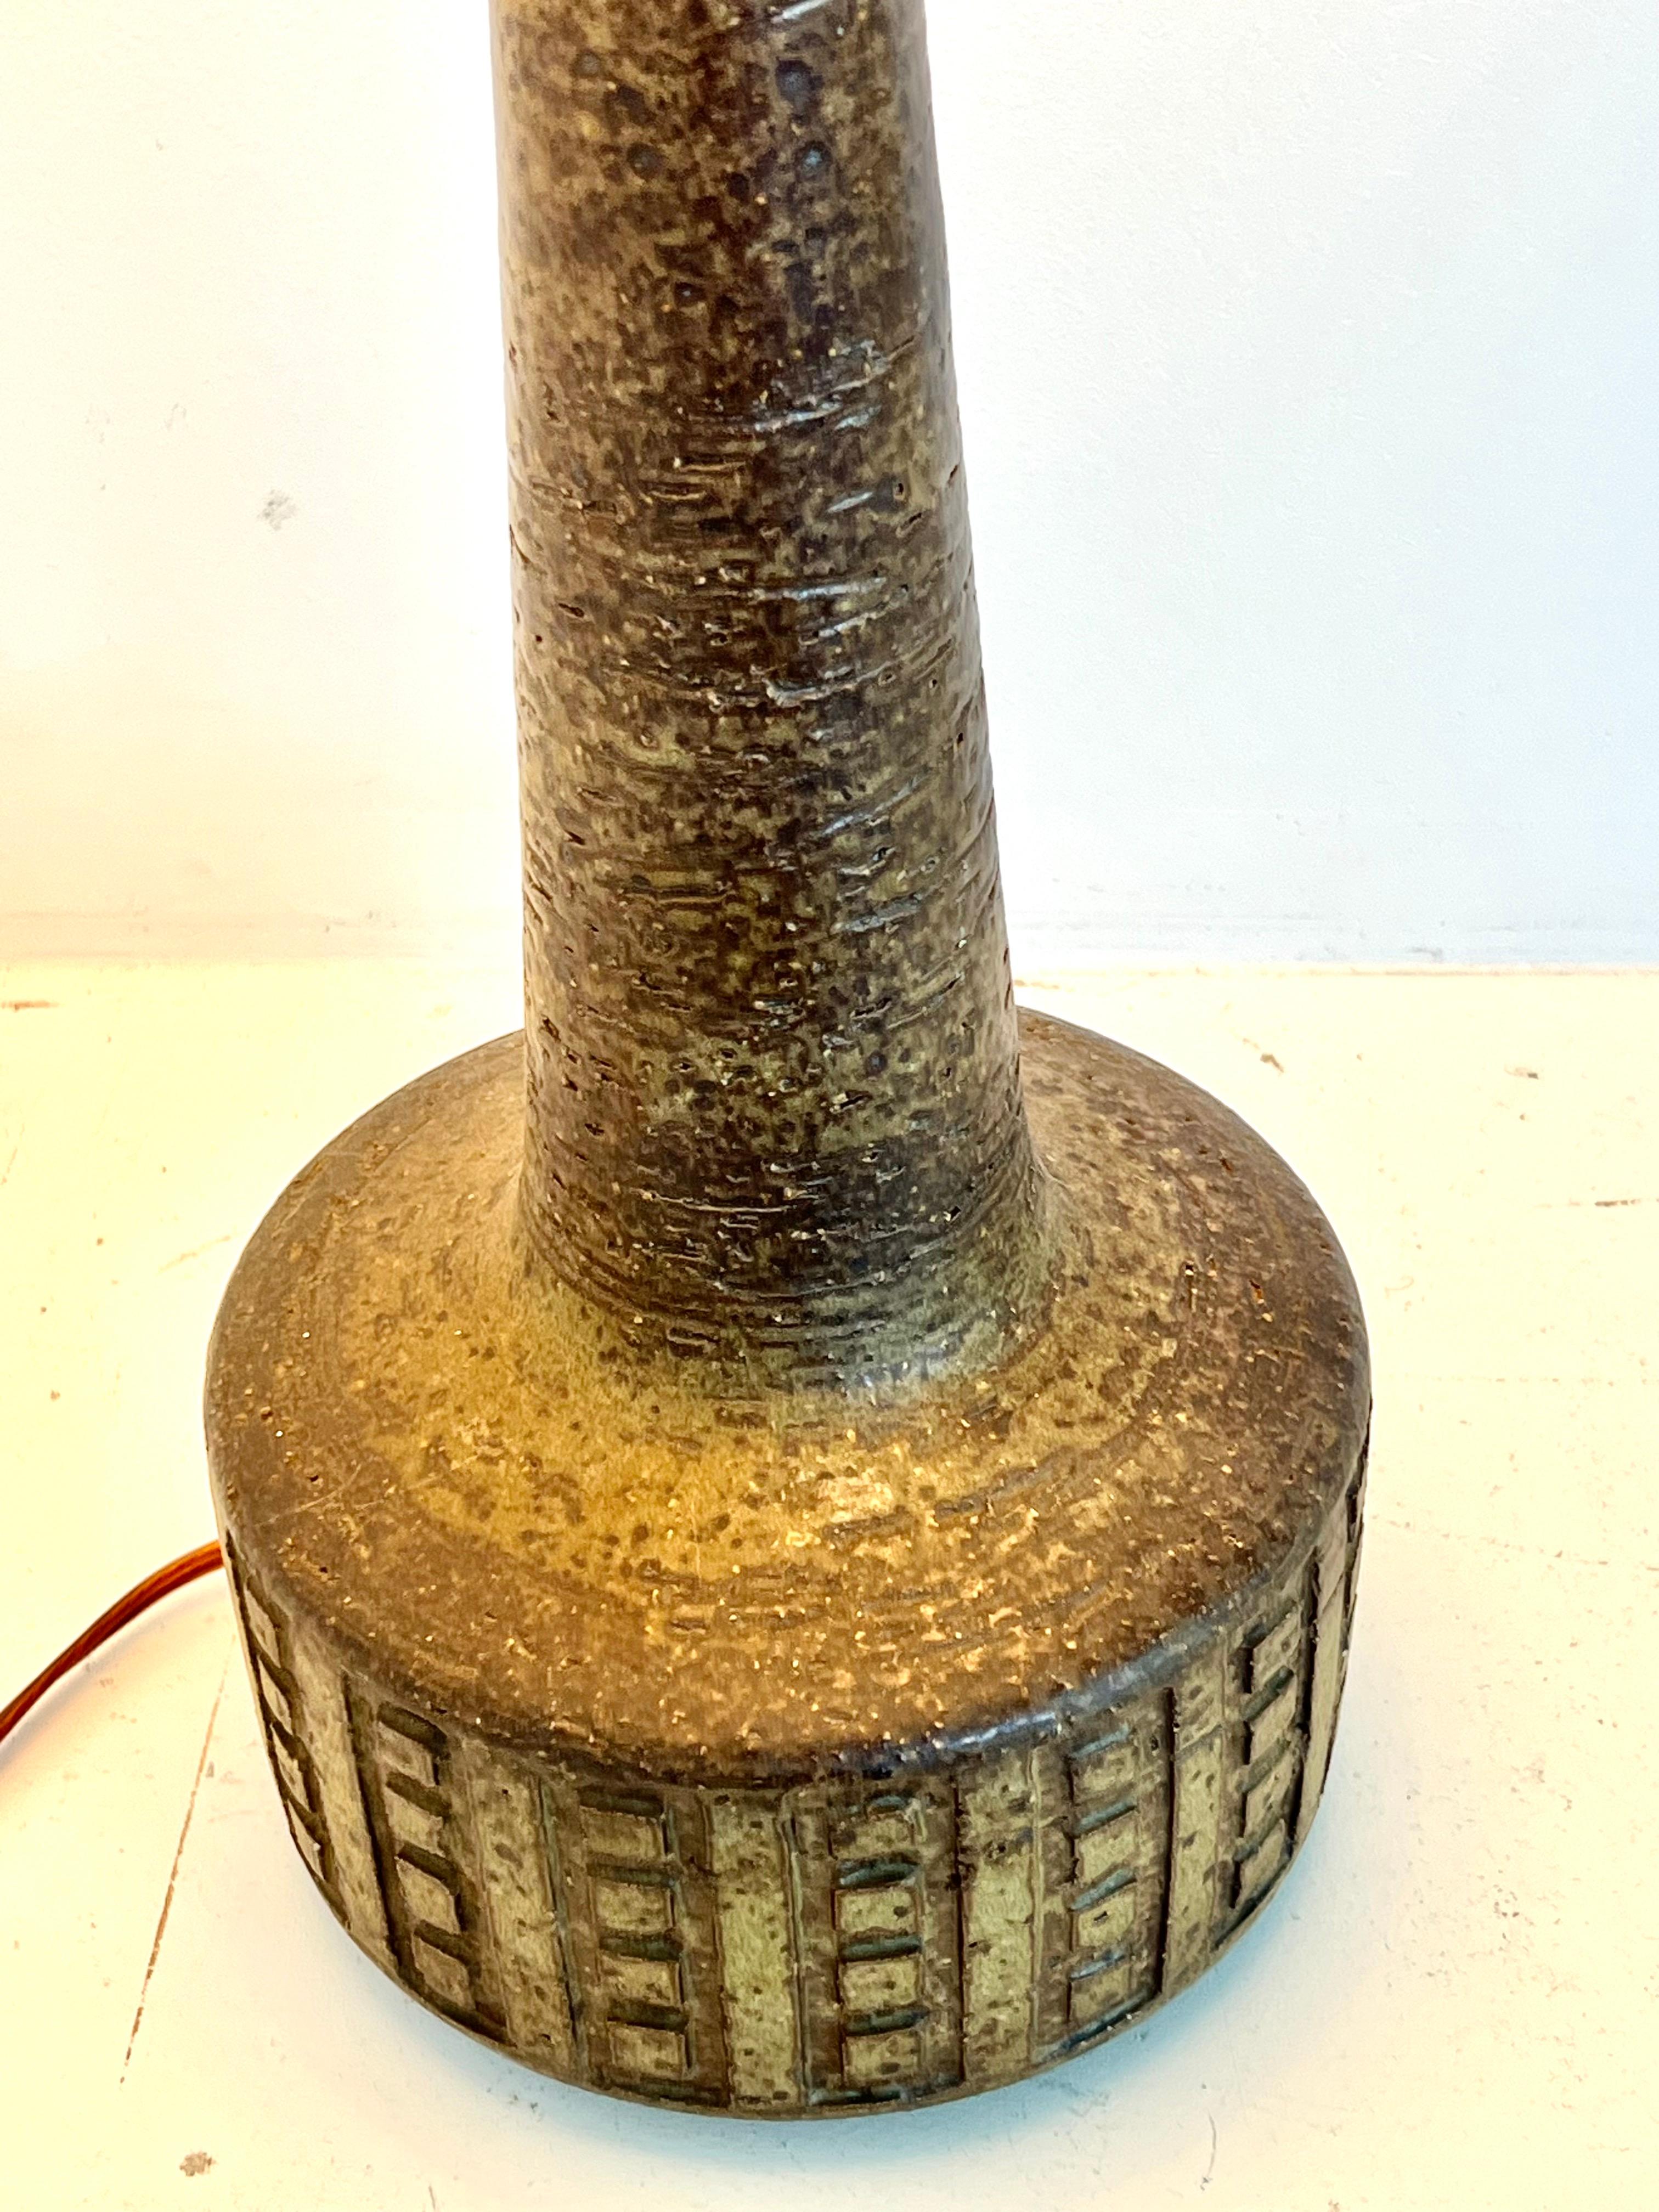 Große Palshus-Tischlampe aus Schamotte-Steinzeug mit Schachbrettmuster auf dem unteren Teil des Körpers in Brauntönen. Die Lampe ist durch Einschneiden in den Boden signiert und hat Modell # DL26/1 und ist in sehr gutem Zustand ohne Chips, Flecken